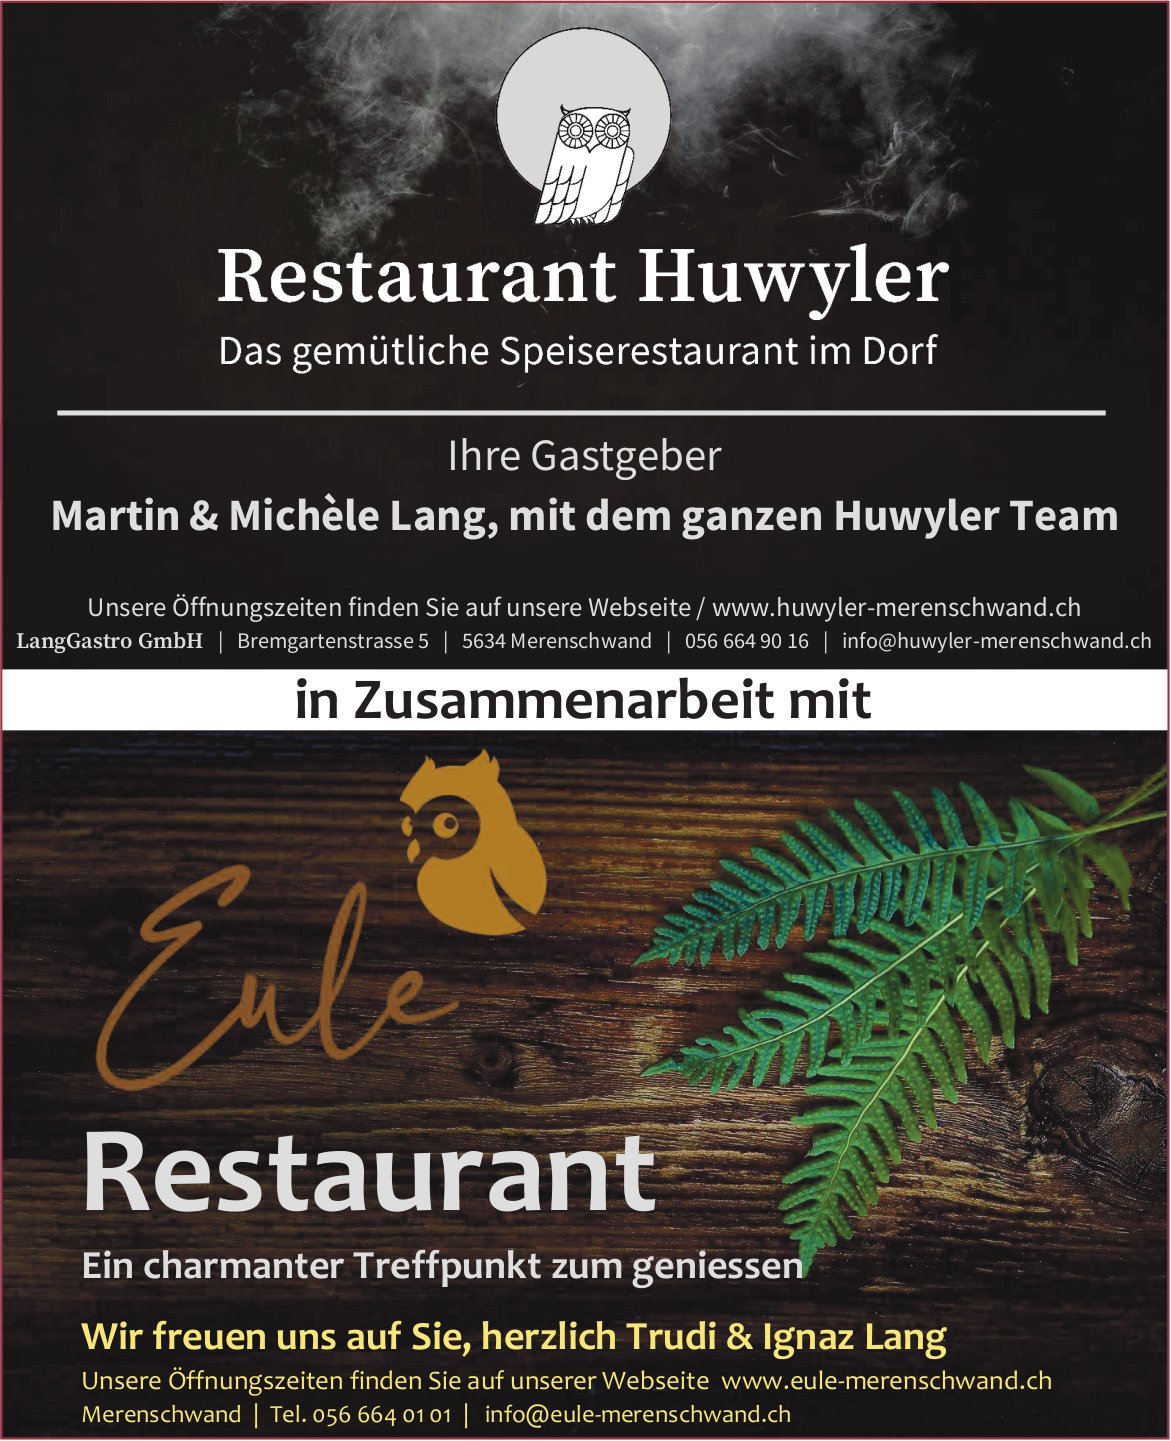 Restaurant Huwyler und Eule Restaurant, Merenschwand - Das gemütliche Speiserestaurant